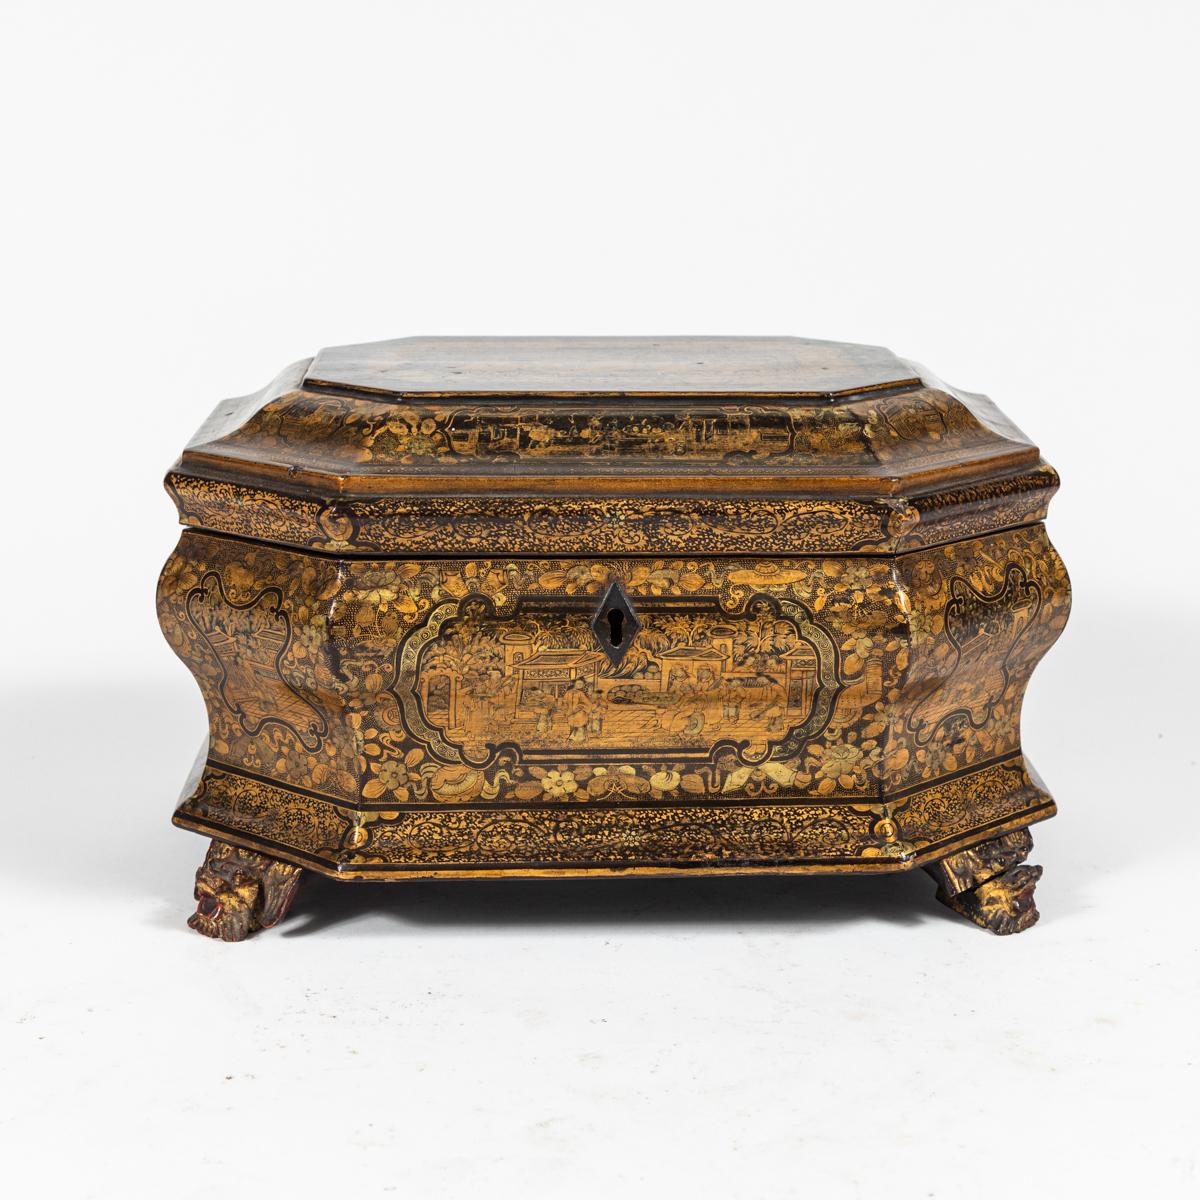 Lackierter Chinoiserie-Kasten aus den 1820er Jahren auf eleganten geschnitzten Füßen. Dieses Stück, das auf dem Höhepunkt der englischen Begeisterung für chinesische Lackwaren hergestellt wurde, weist ein äußerst kompliziertes goldfarbenes Muster